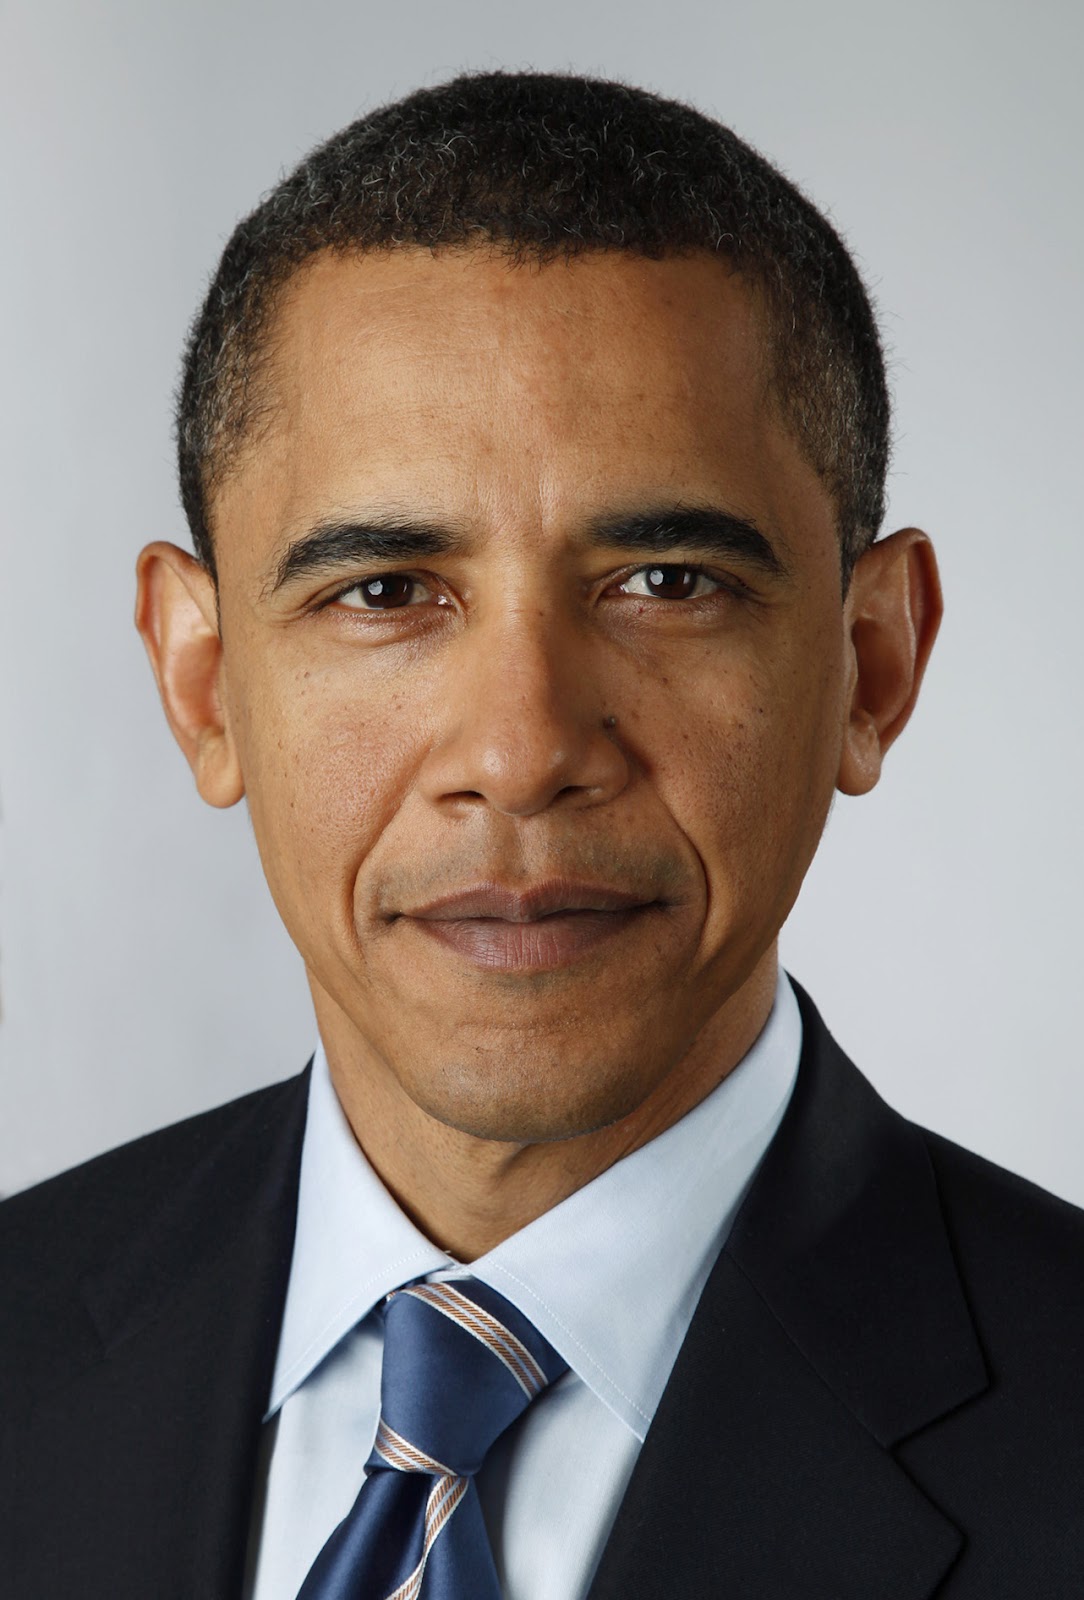 http://3.bp.blogspot.com/-PQpLCQr1IZI/T4xq1zMUQnI/AAAAAAAAACo/sjPpwdEuBwA/s1600/Official_portrait_of_Barack_Obama-2.jpg